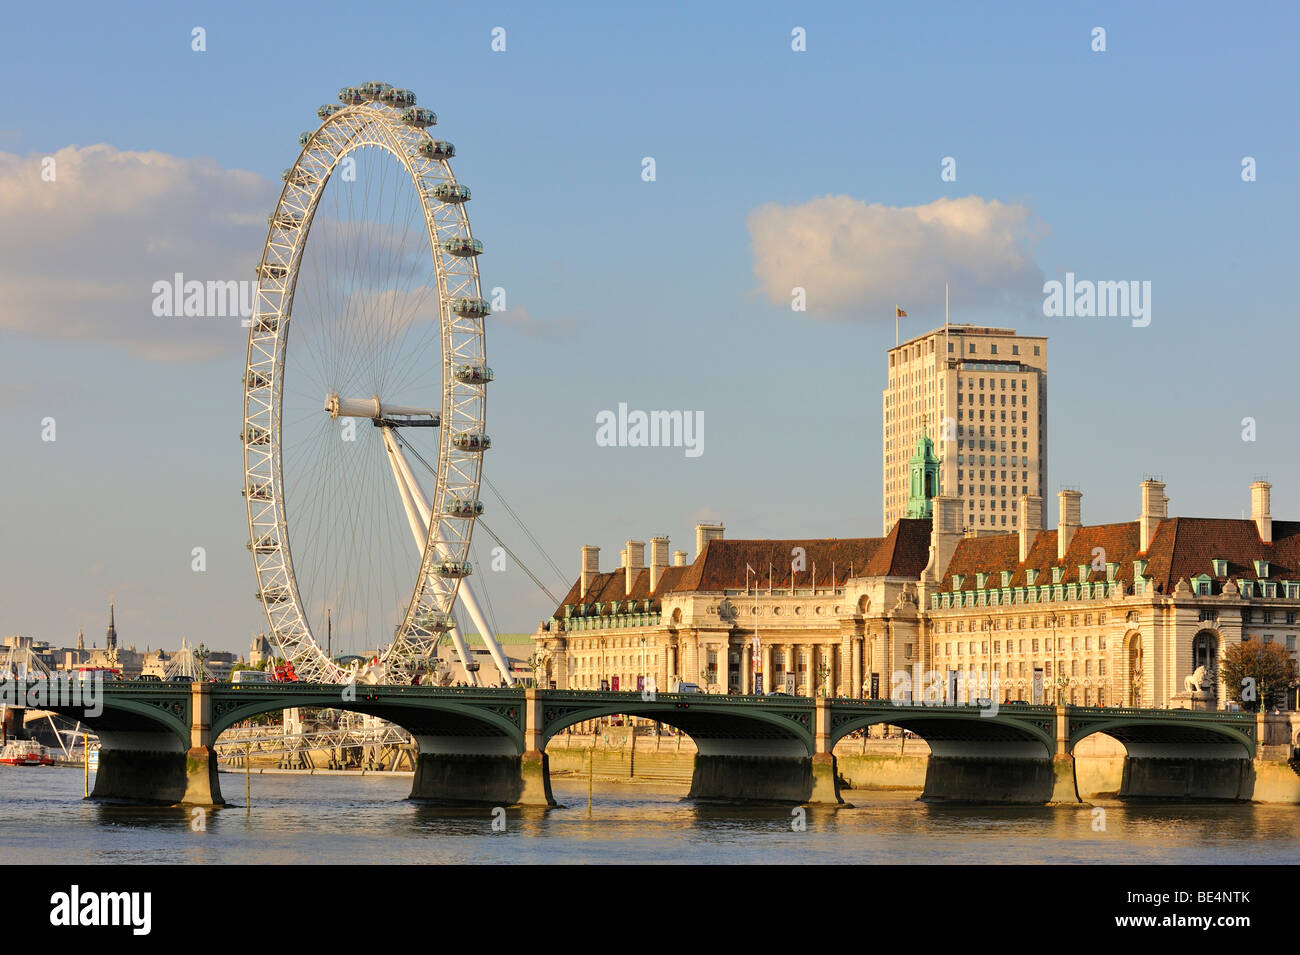 Blick über die Themse zu Westminster Bridge und 135 Meter hohen London Eye oder Millennium Wheel, London, England, United Kingd Stockfoto